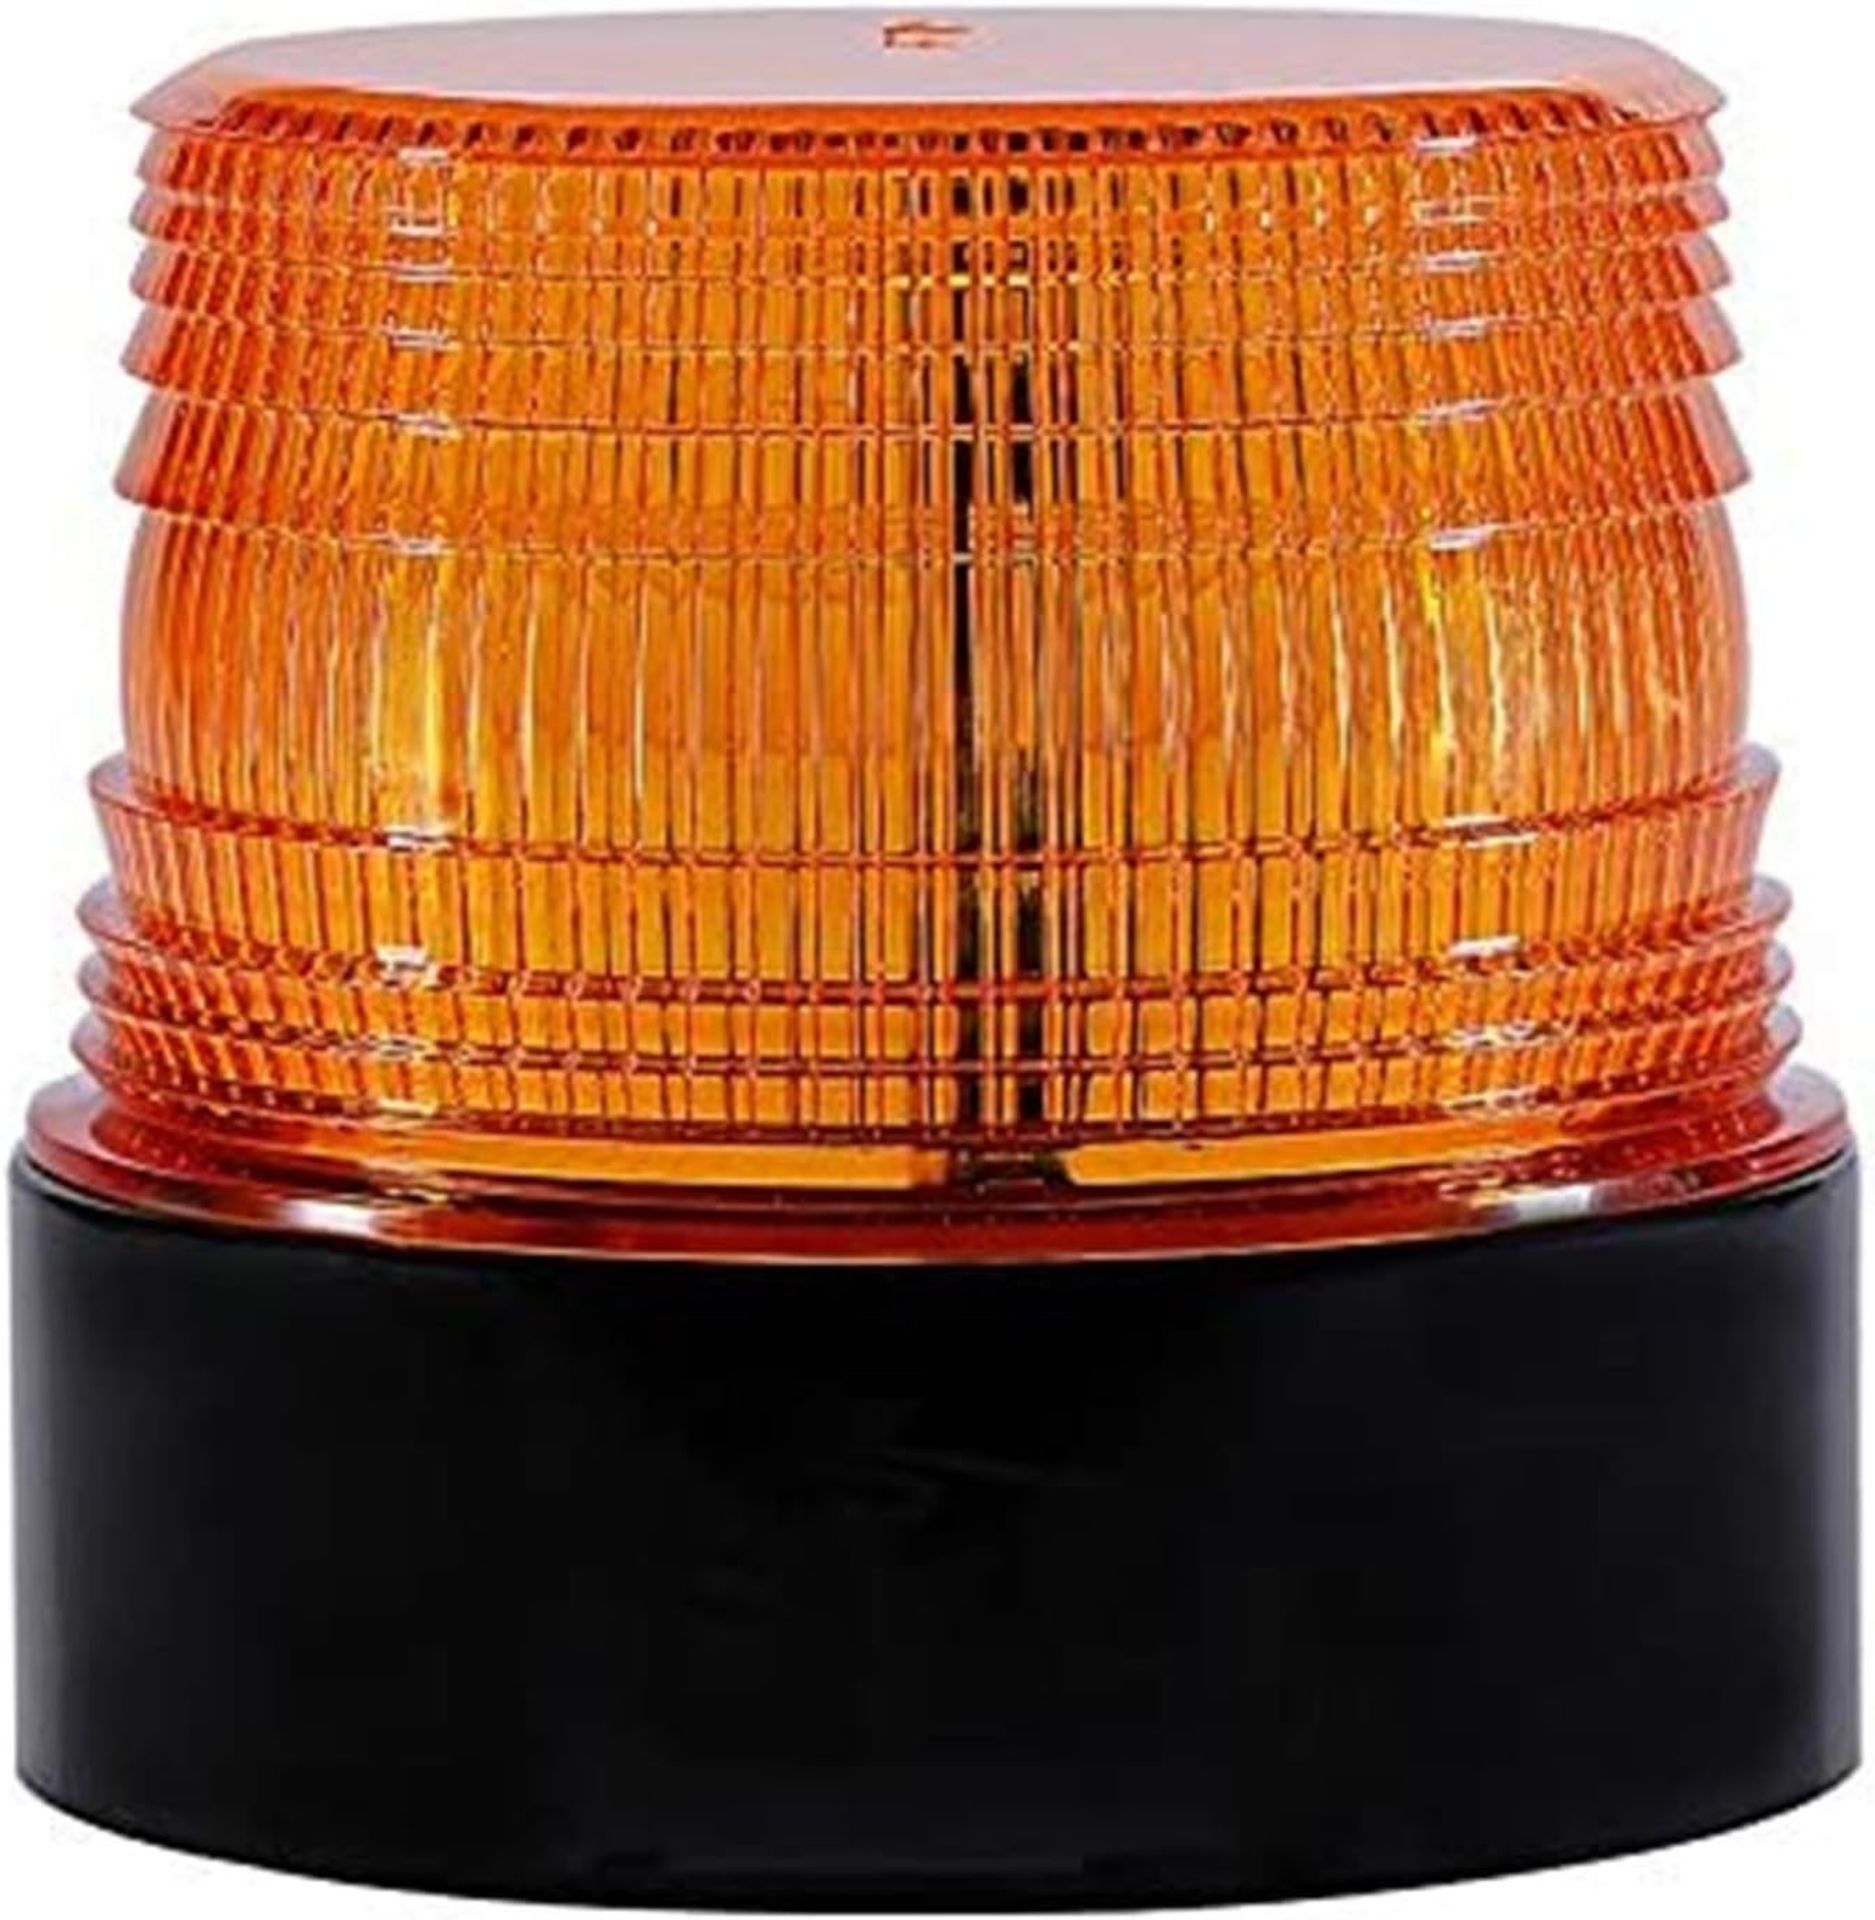 RRP £24.99 LED Warning Light 12V Strobe Beacon Flashing Lights Magnetic Emergency Amber Lights for